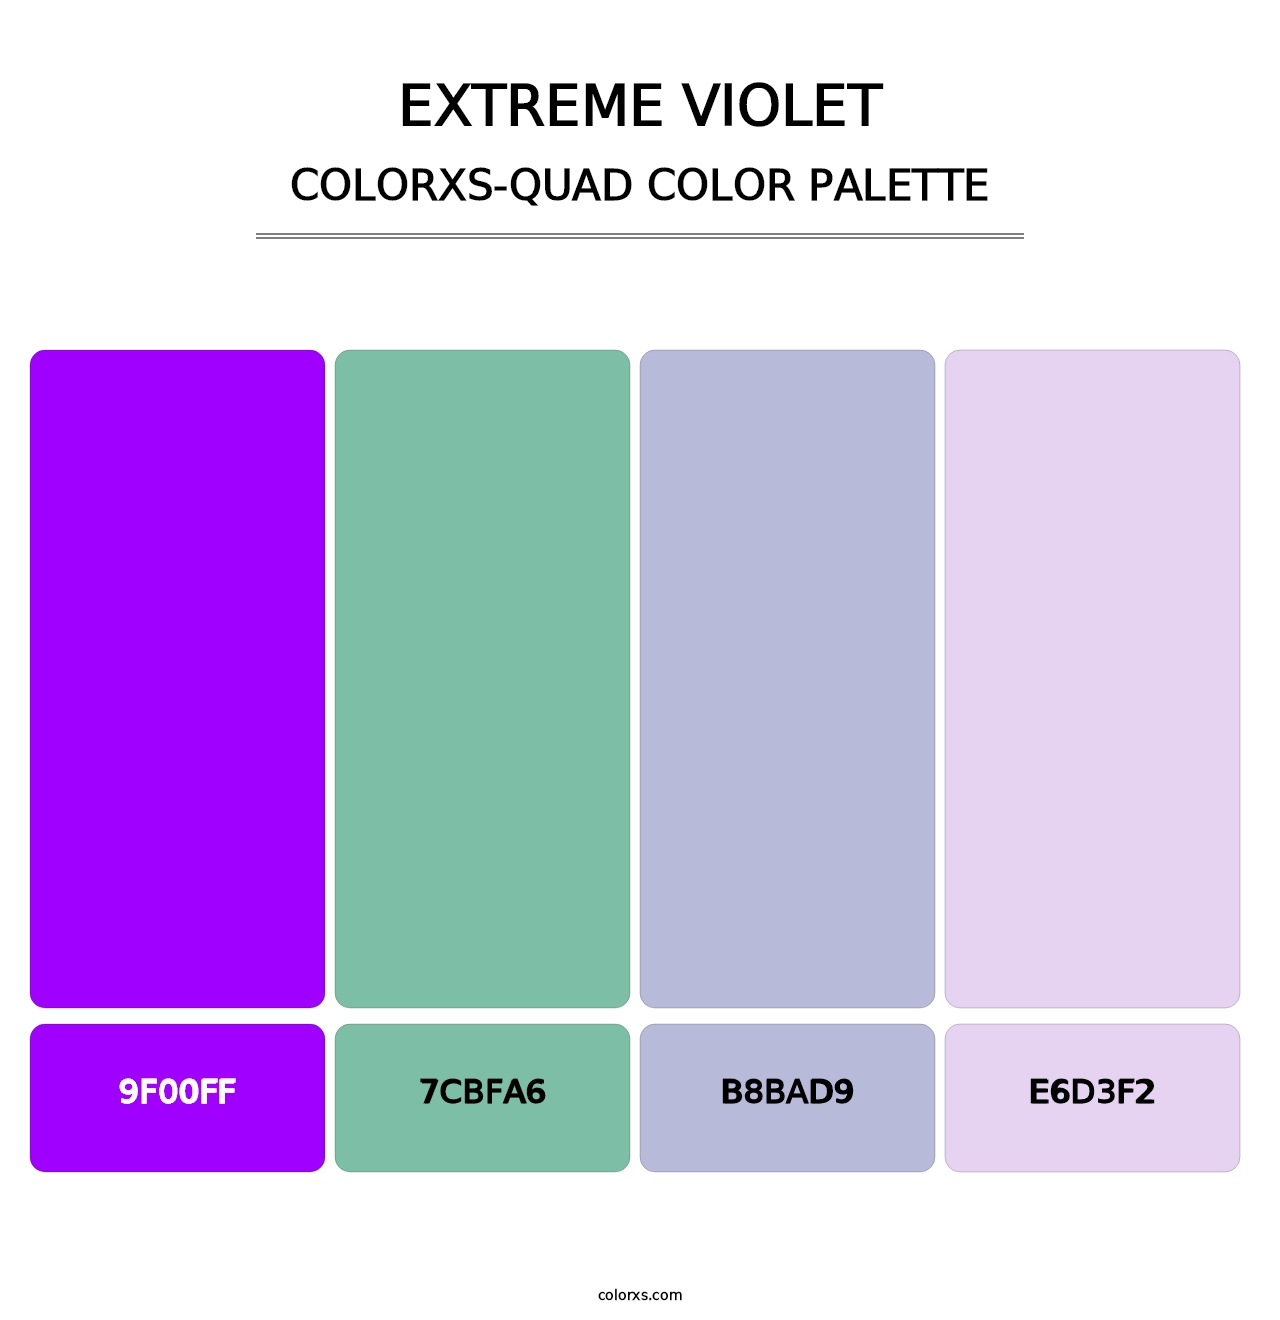 Extreme Violet - Colorxs Quad Palette